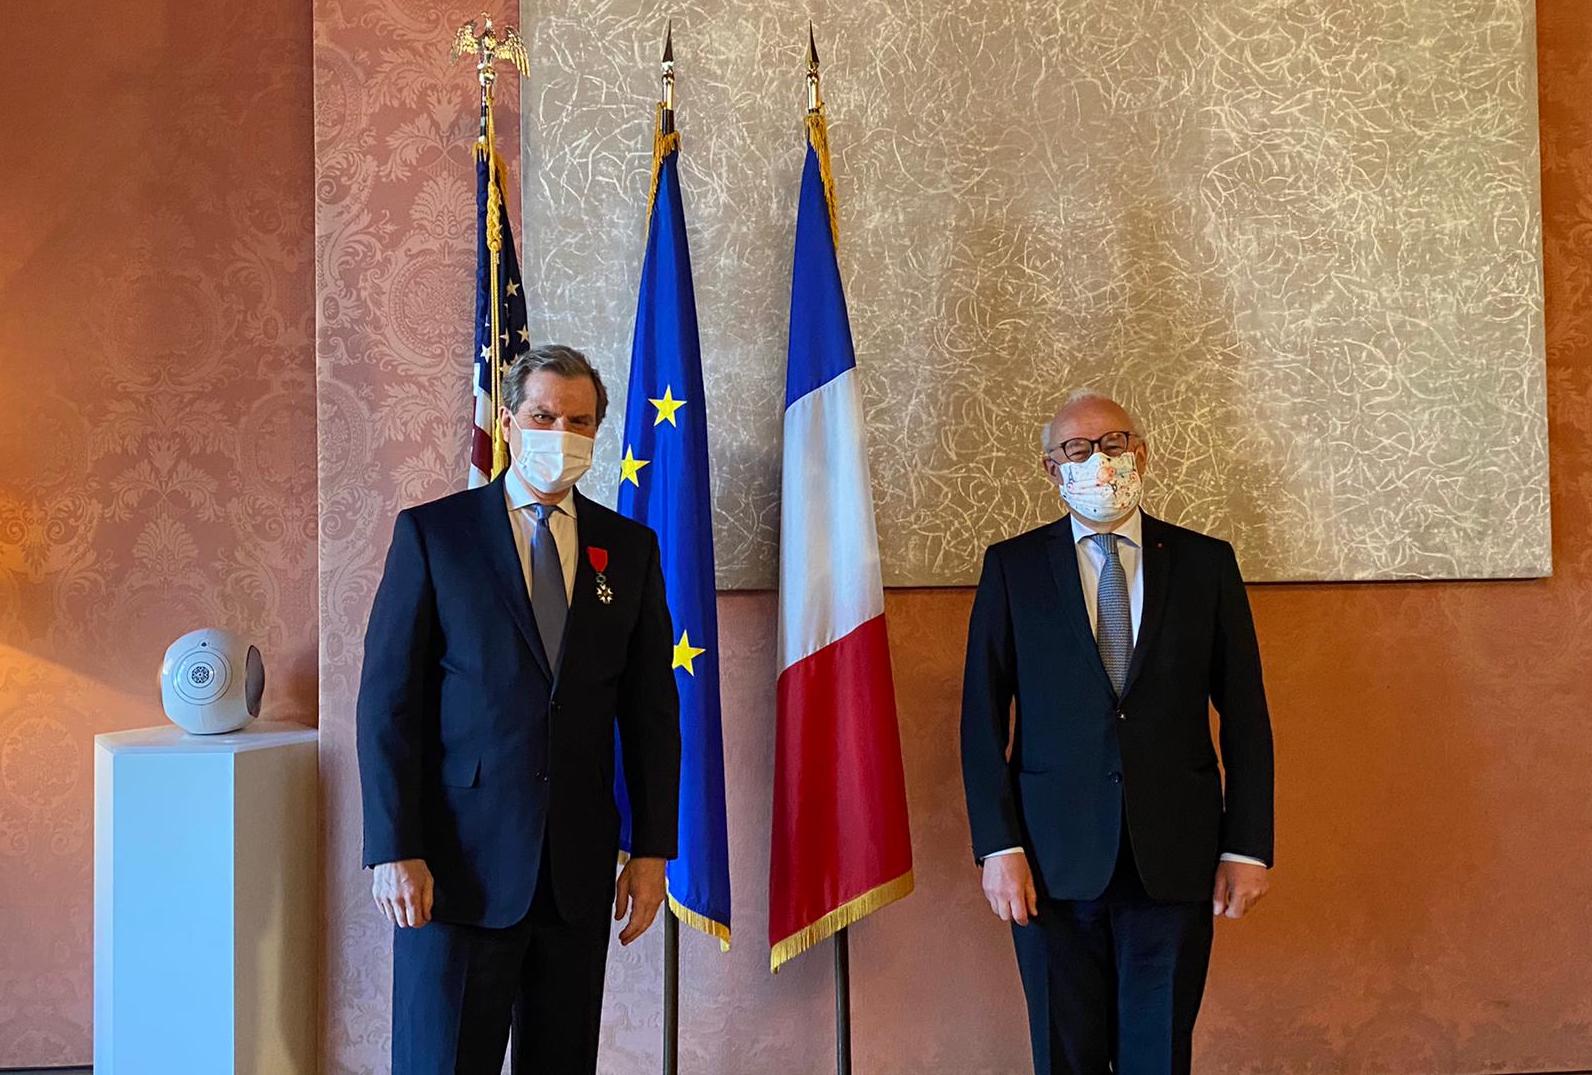 David Harris, CEO d’AJC, devient "officier" de l'Ordre de la Légion d'honneur lors d'une cérémonie organisée par le gouvernement français